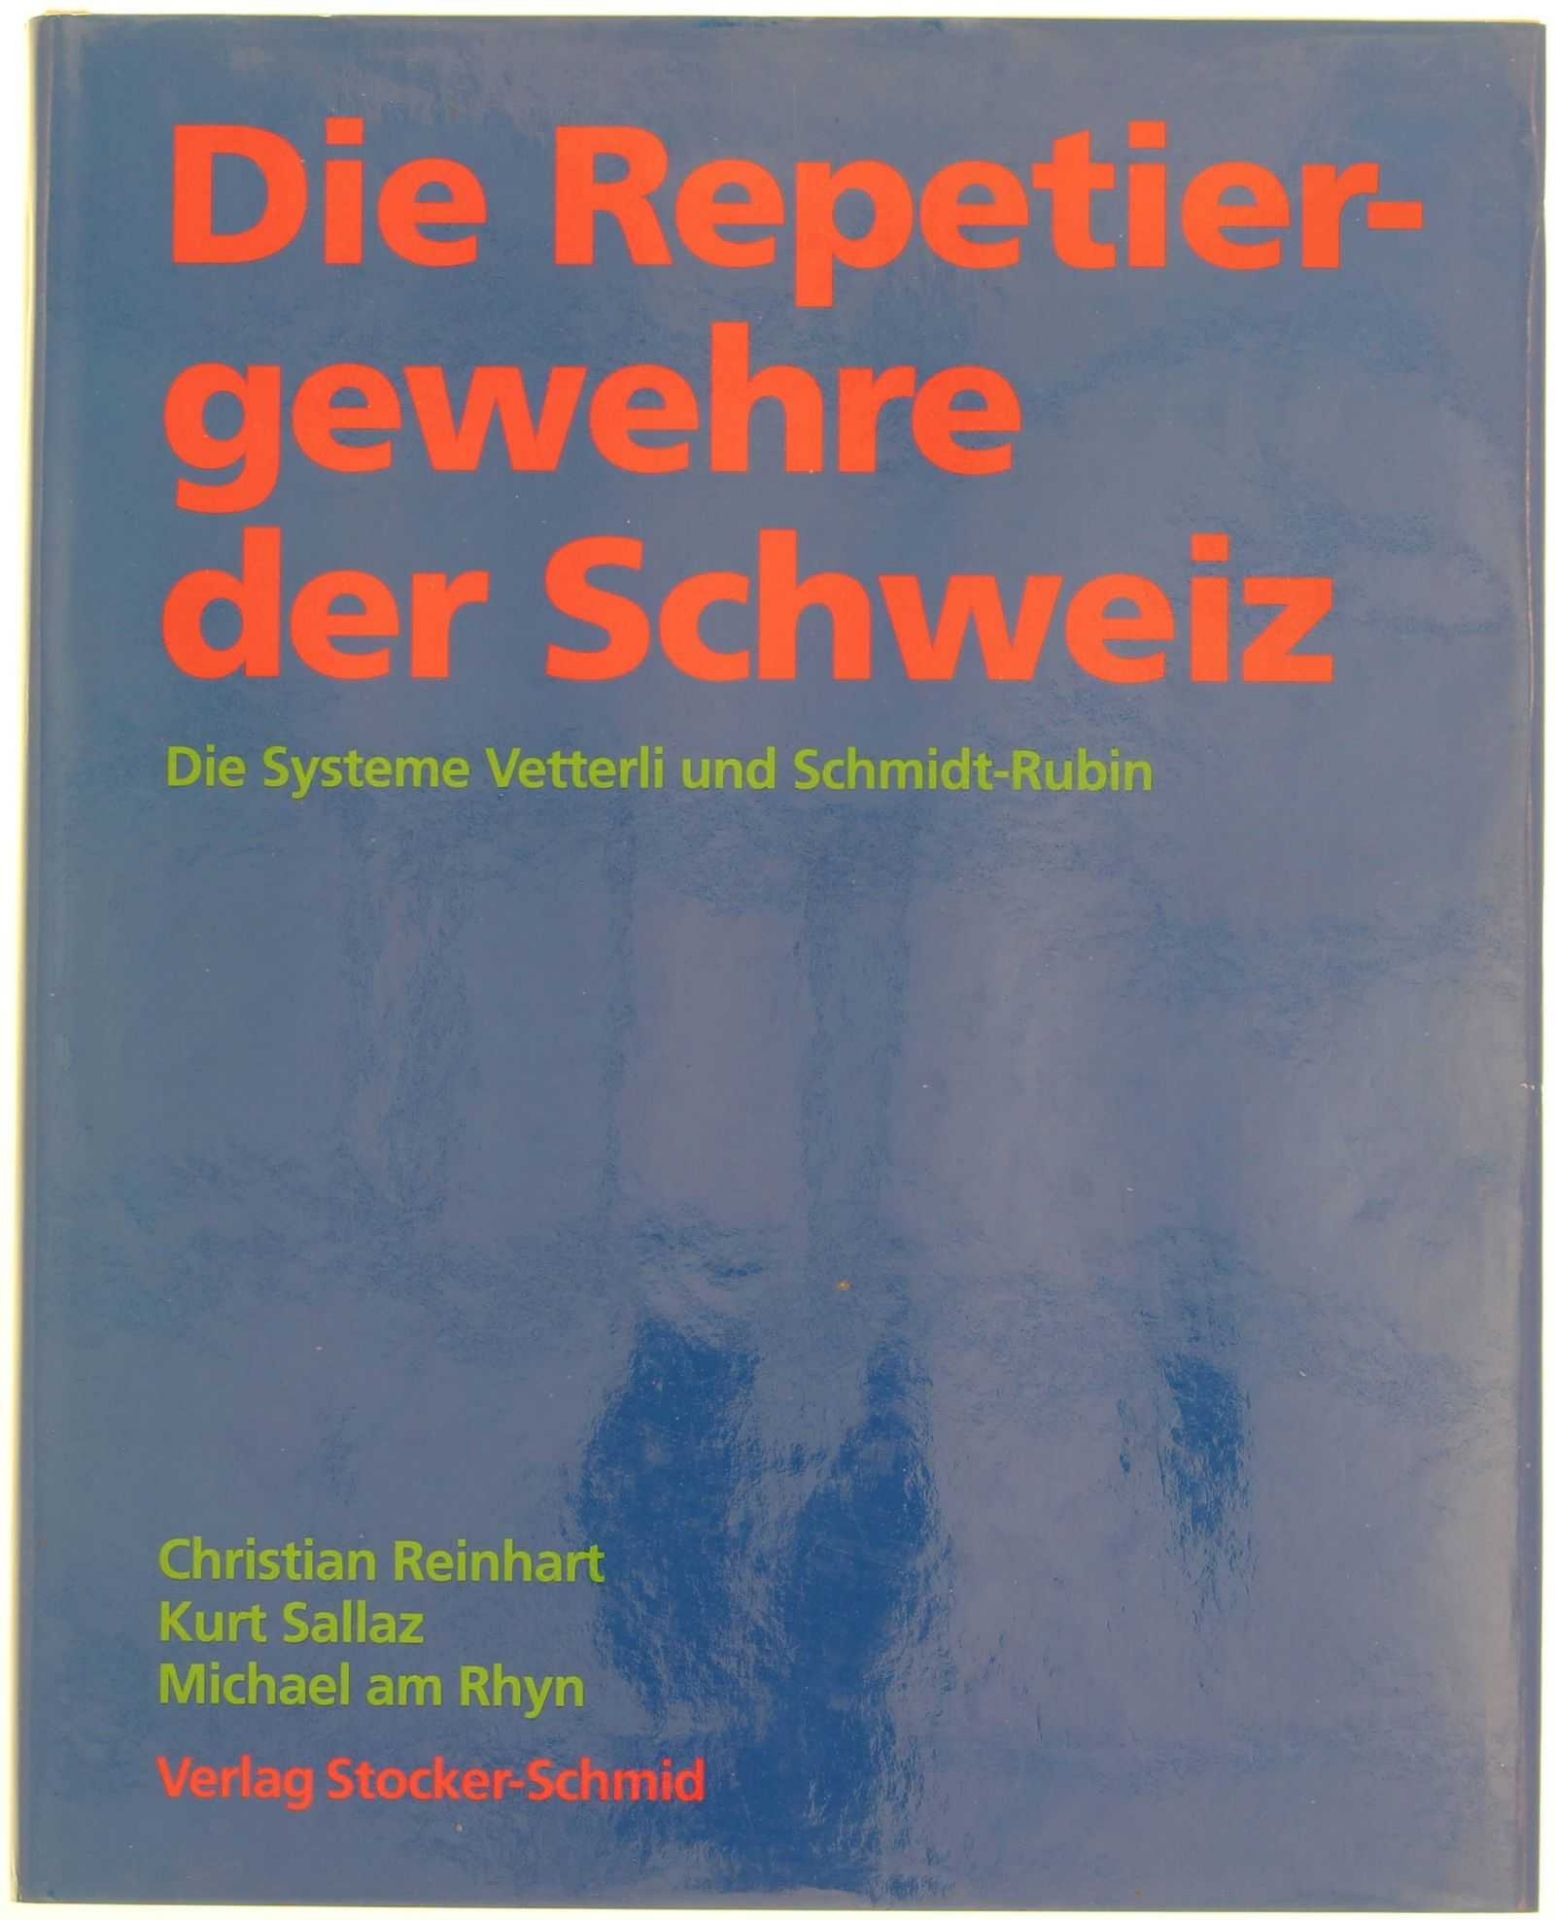 Die Repetiergewehre der Schweiz, Systeme Vetterli und Schmidt-Rubin Zusammenfassung der beiden Bände